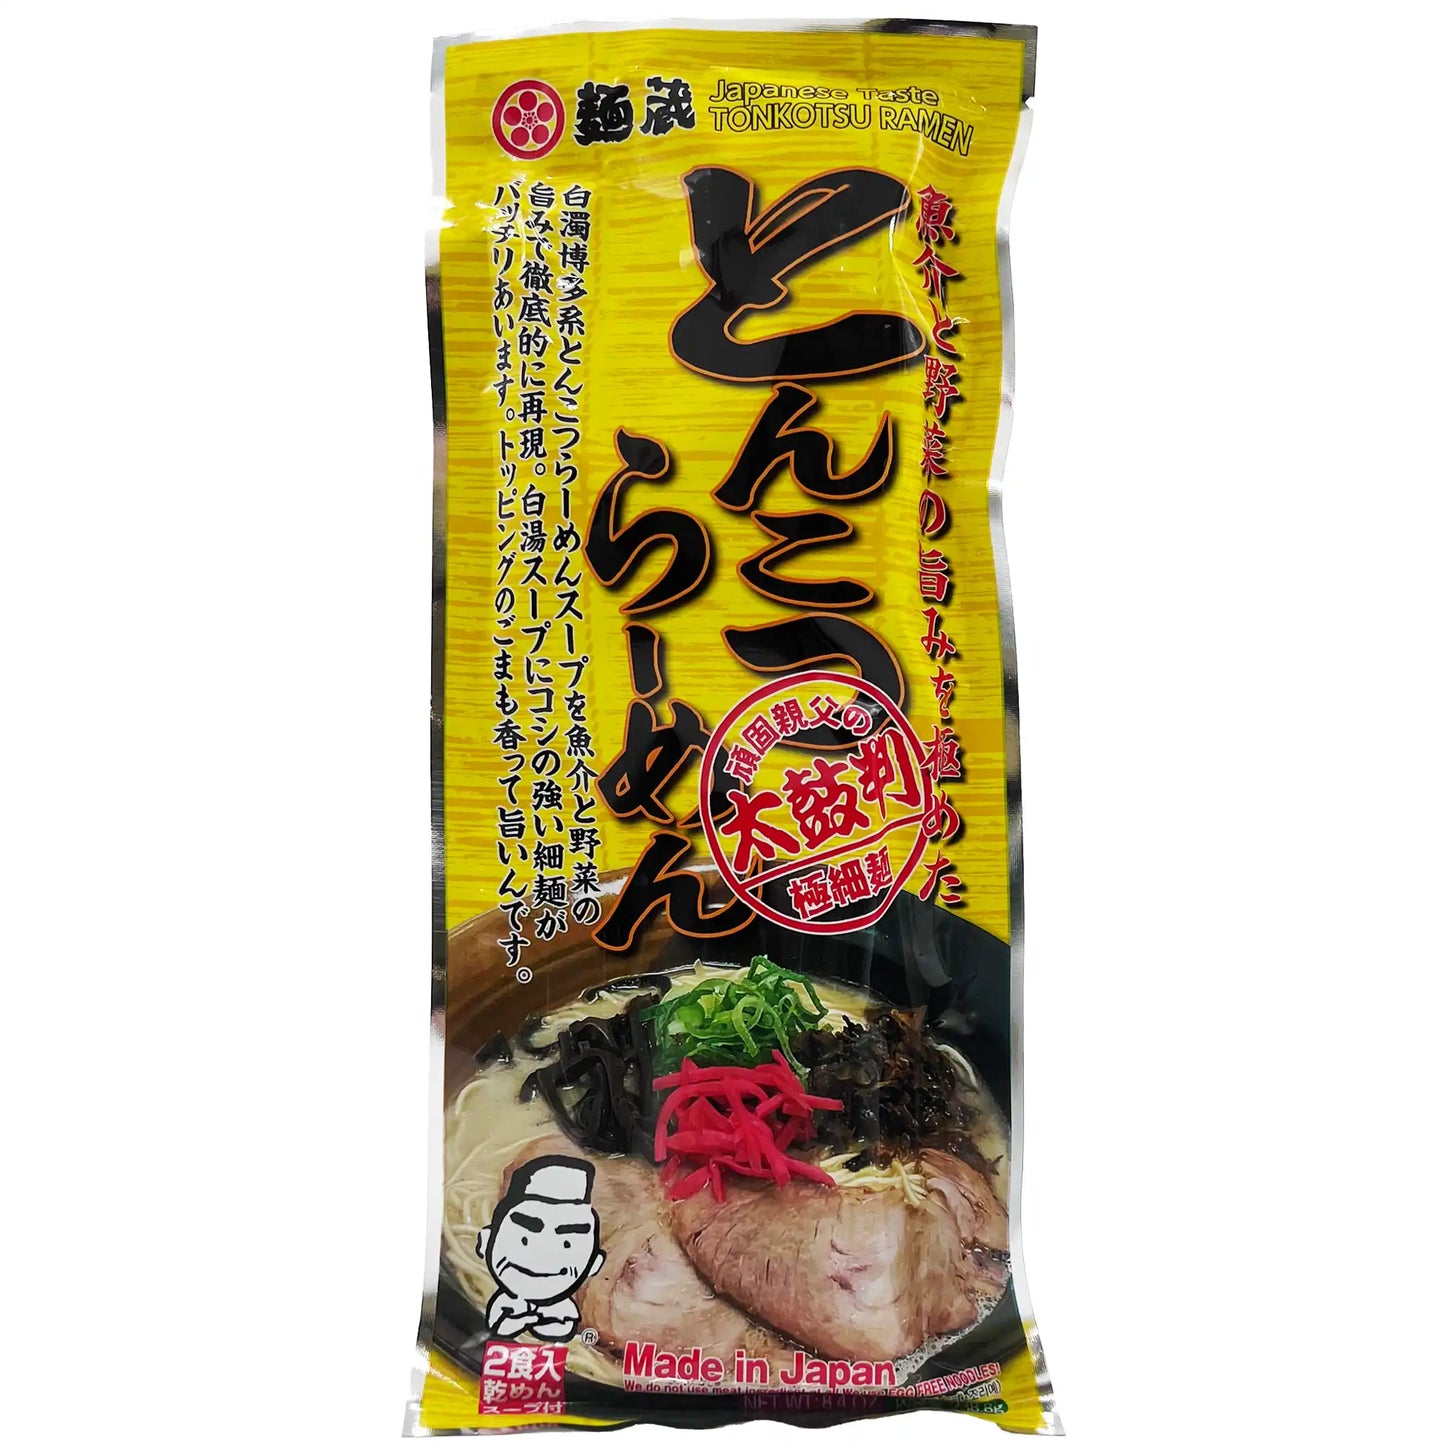 Kurata Foods Menzo Ramen, Tonkotsu Flavor 8.42 oz